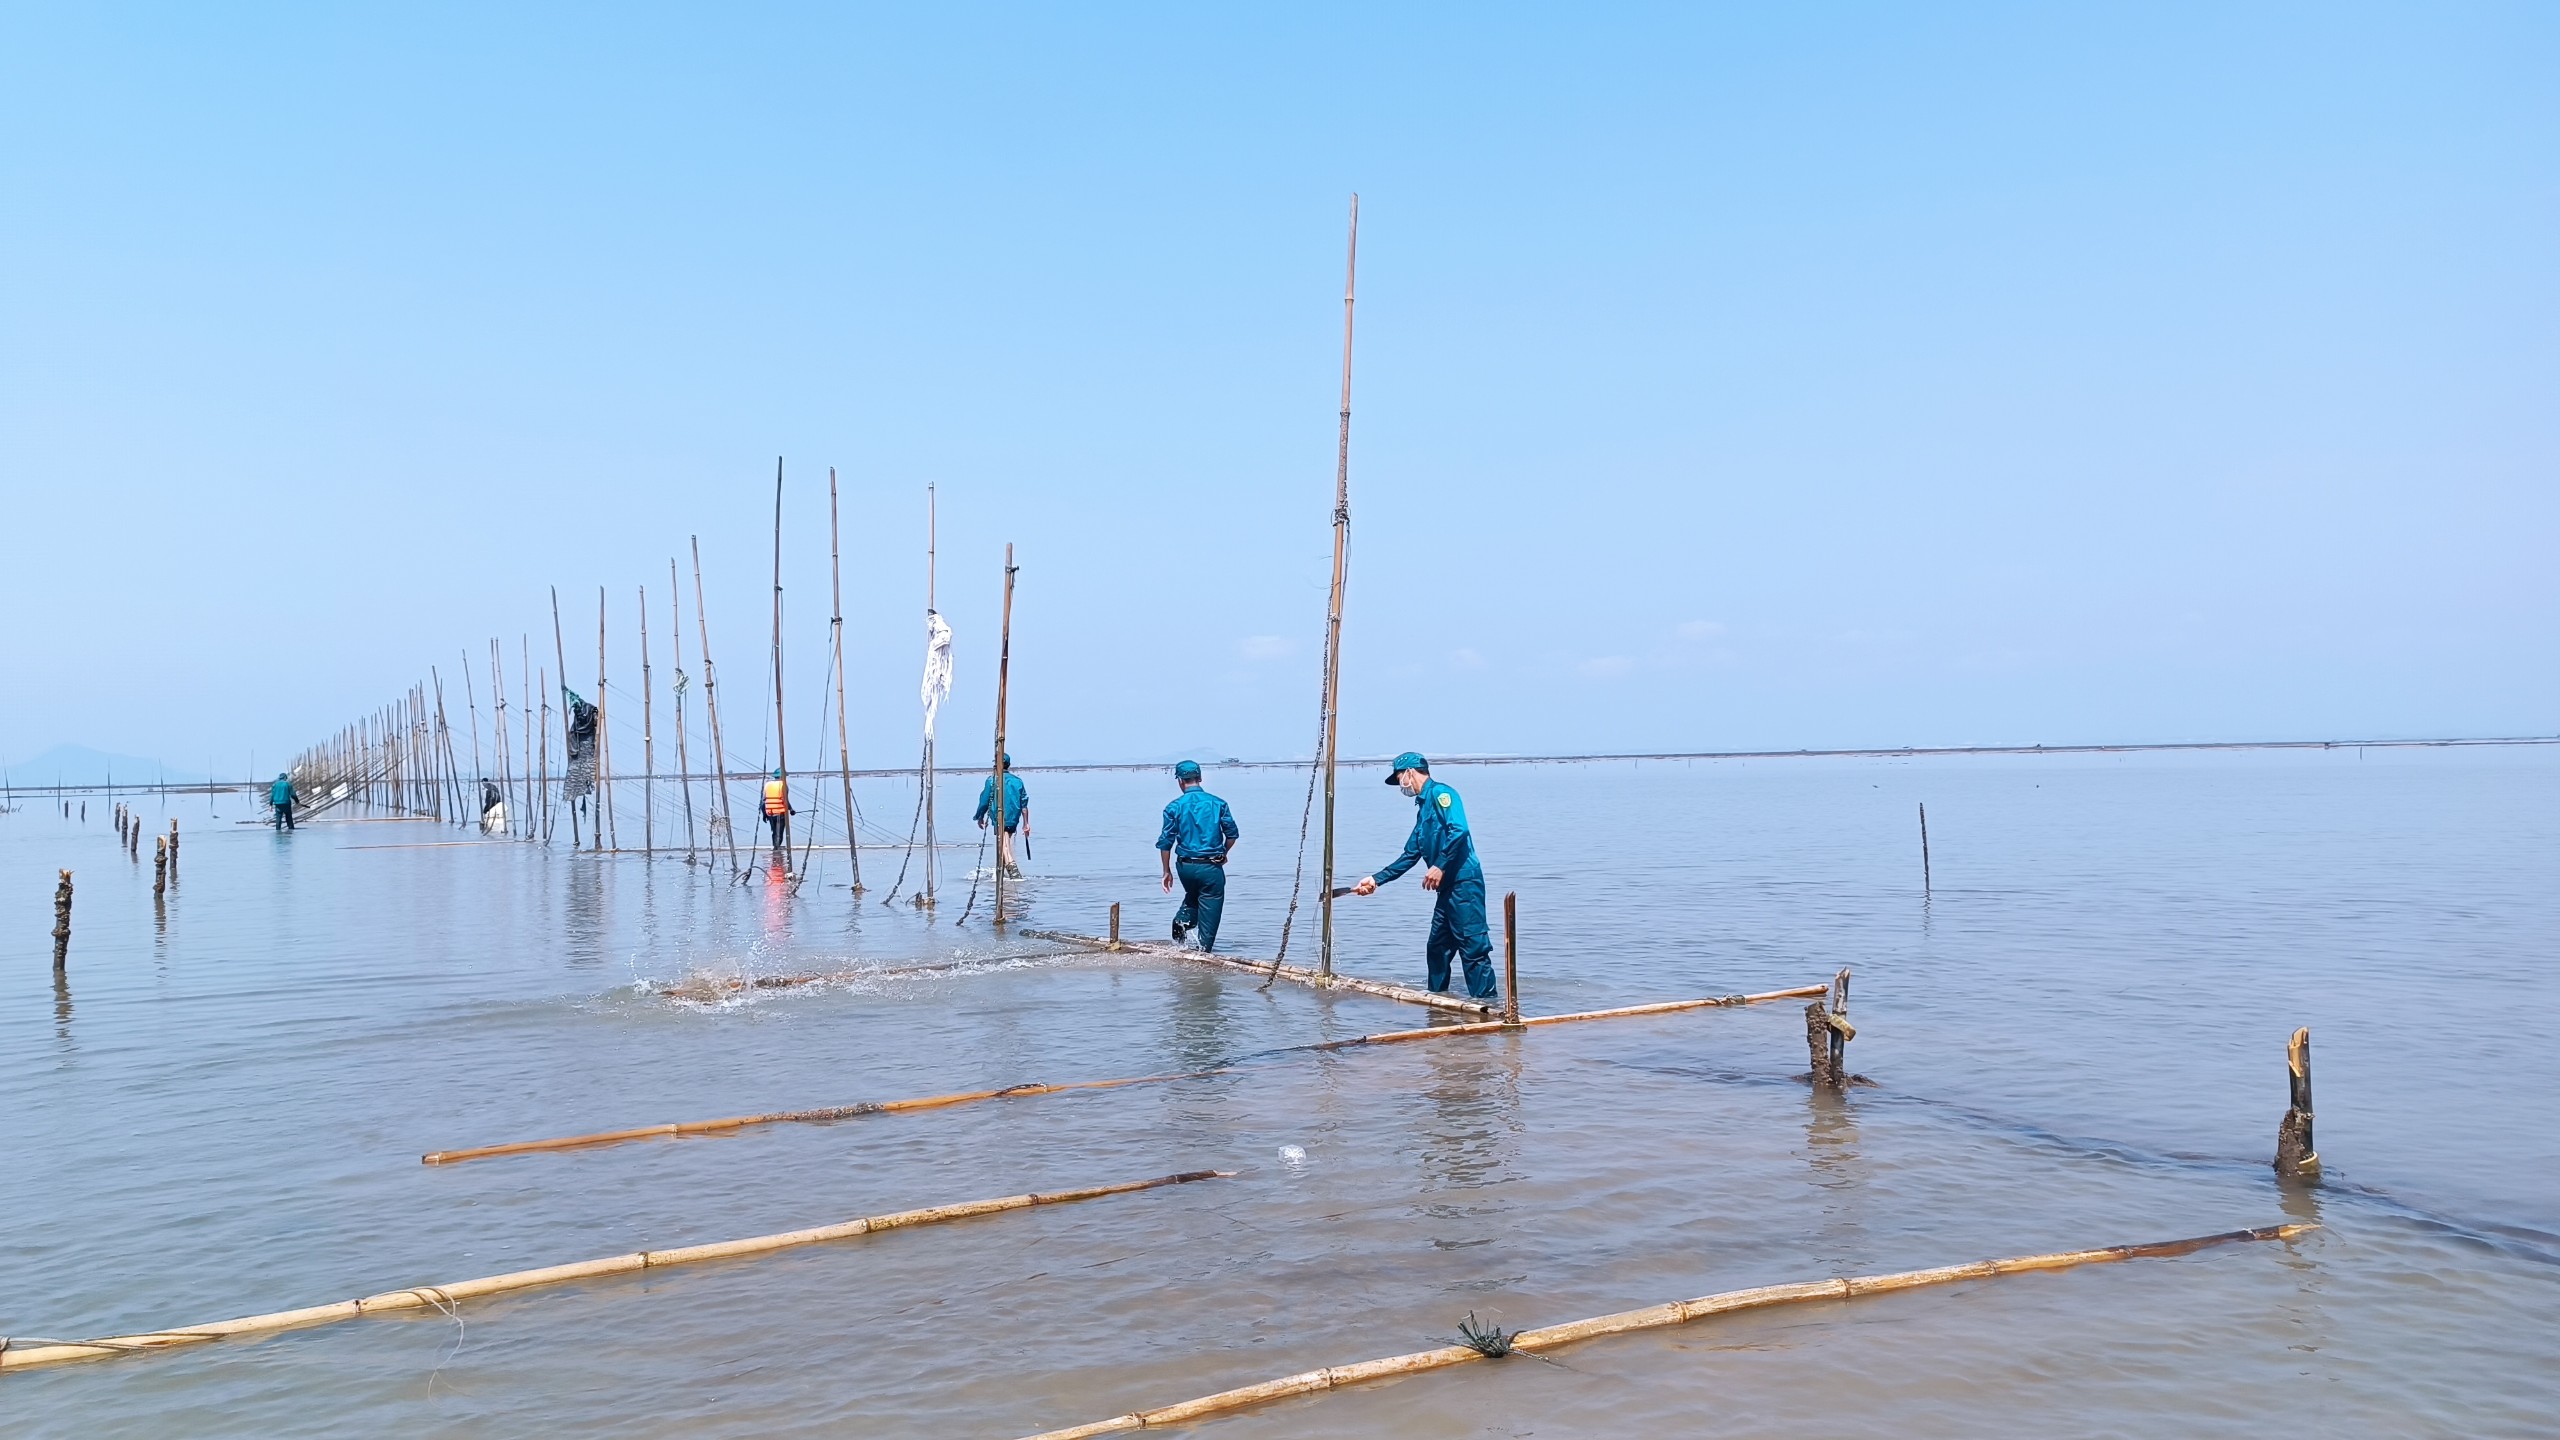 Một thành phố của tỉnh Quảng Ninh xử lý 15.000m lưới săm khai thác thủy sản trái phép trên 70ha đất bãi triều- Ảnh 1.